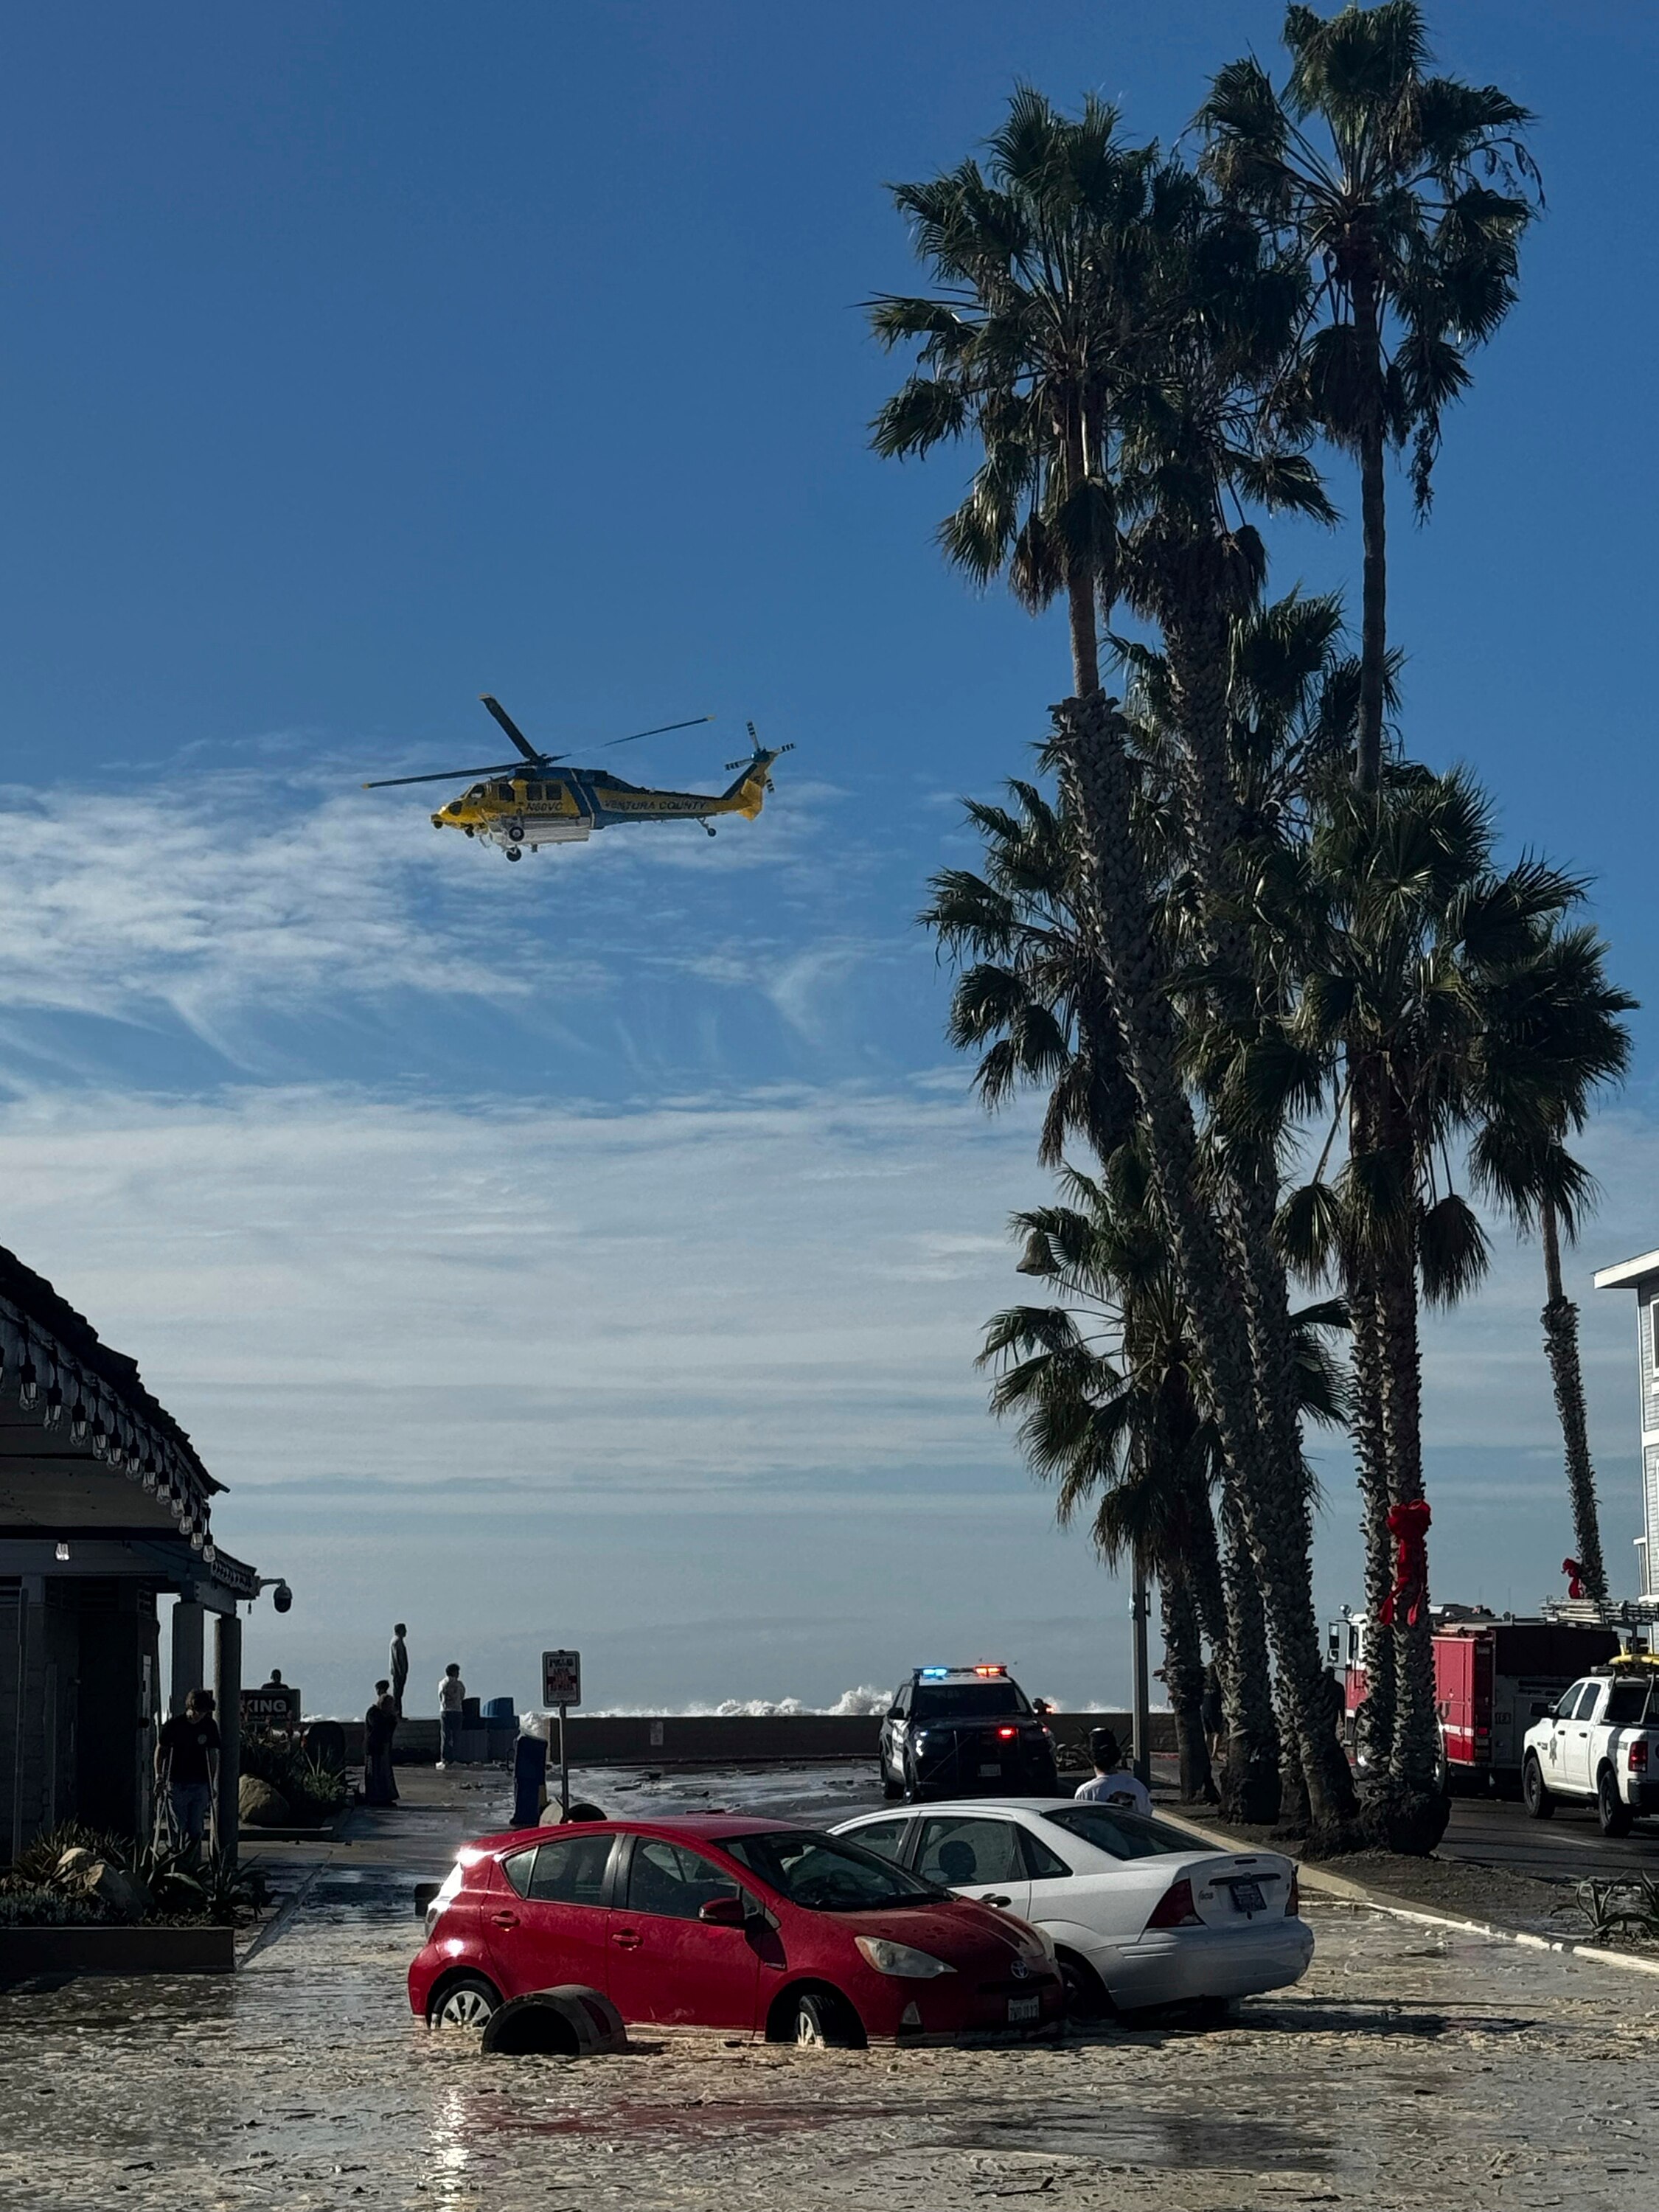 Вода высоких волн затопляет улицы.  Посреди дороги в центре фотографии стоят две затопленные машины, над ними пролетает вертолет.